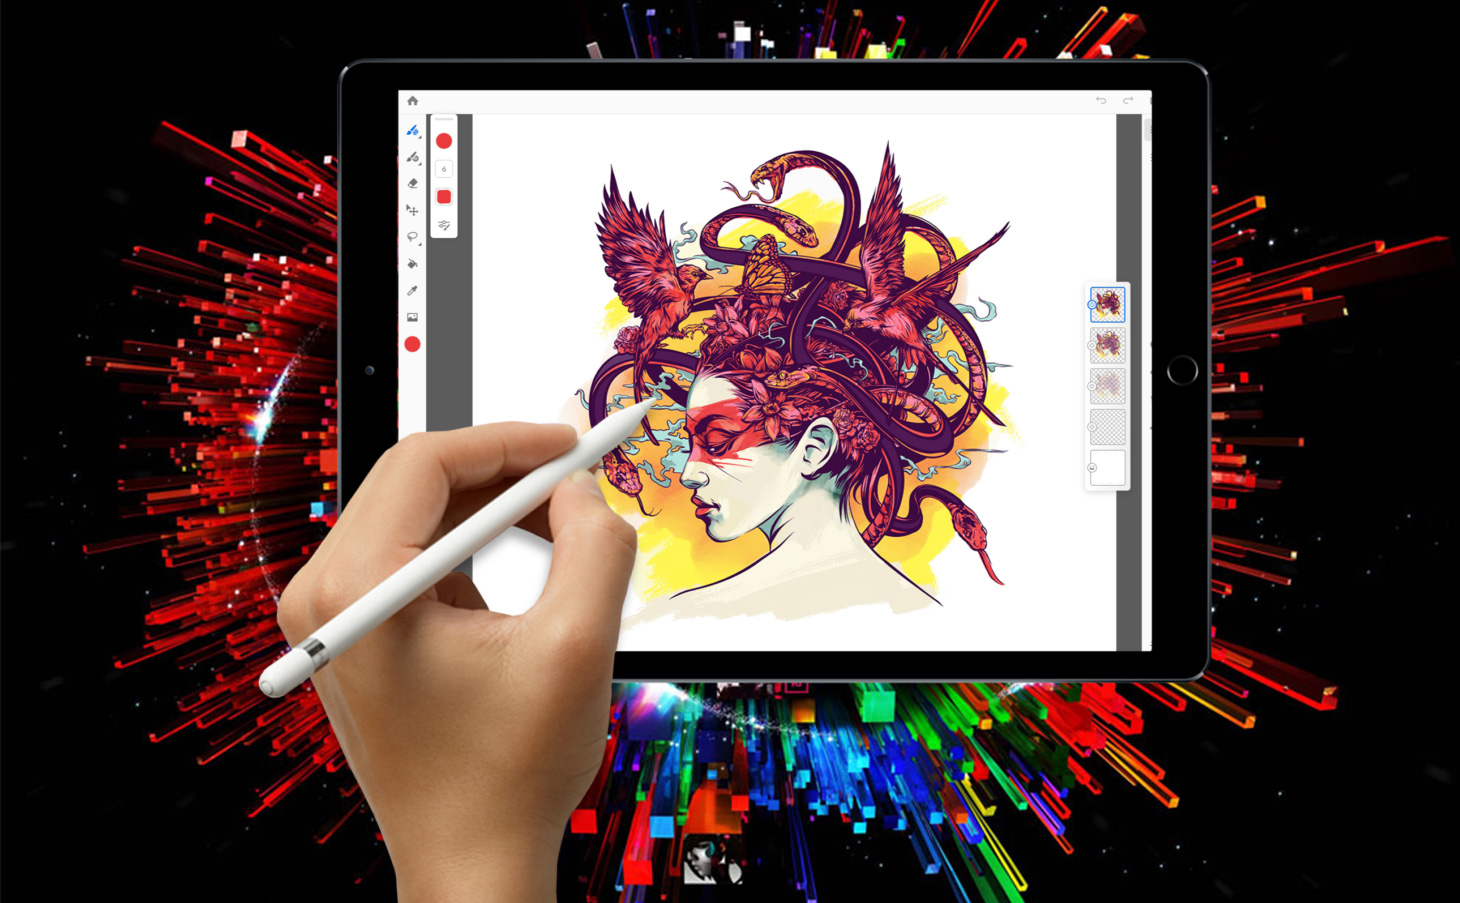 Photoshop CC cho iPad giúp bạn dễ dàng tạo và chỉnh sửa ảnh trên iPad của mình. Với rất nhiều tính năng và công cụ tuyệt vời, Photoshop CC là lựa chọn hoàn hảo cho những người muốn tạo ra những tác phẩm nghệ thuật đẹp và sáng tạo.